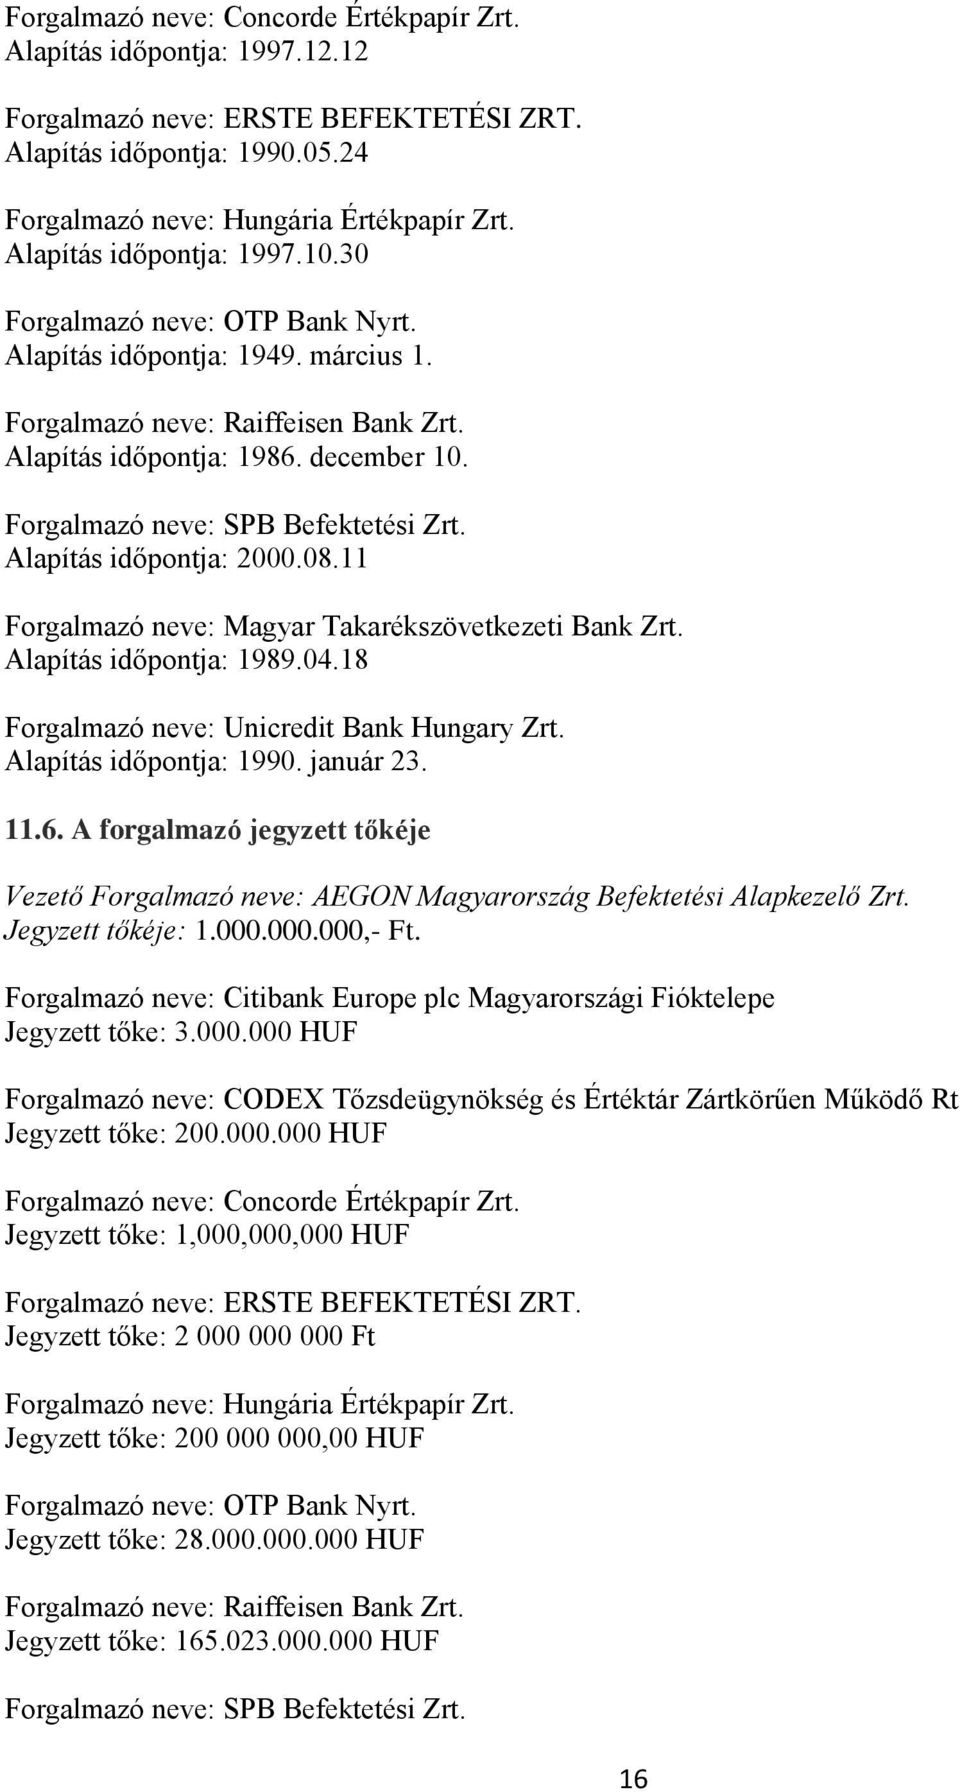 Forgalmazó neve: SPB Befektetési Zrt. Alapítás időpontja: 2000.08.11 Forgalmazó neve: Magyar Takarékszövetkezeti Bank Zrt. Alapítás időpontja: 1989.04.18 Forgalmazó neve: Unicredit Bank Hungary Zrt.